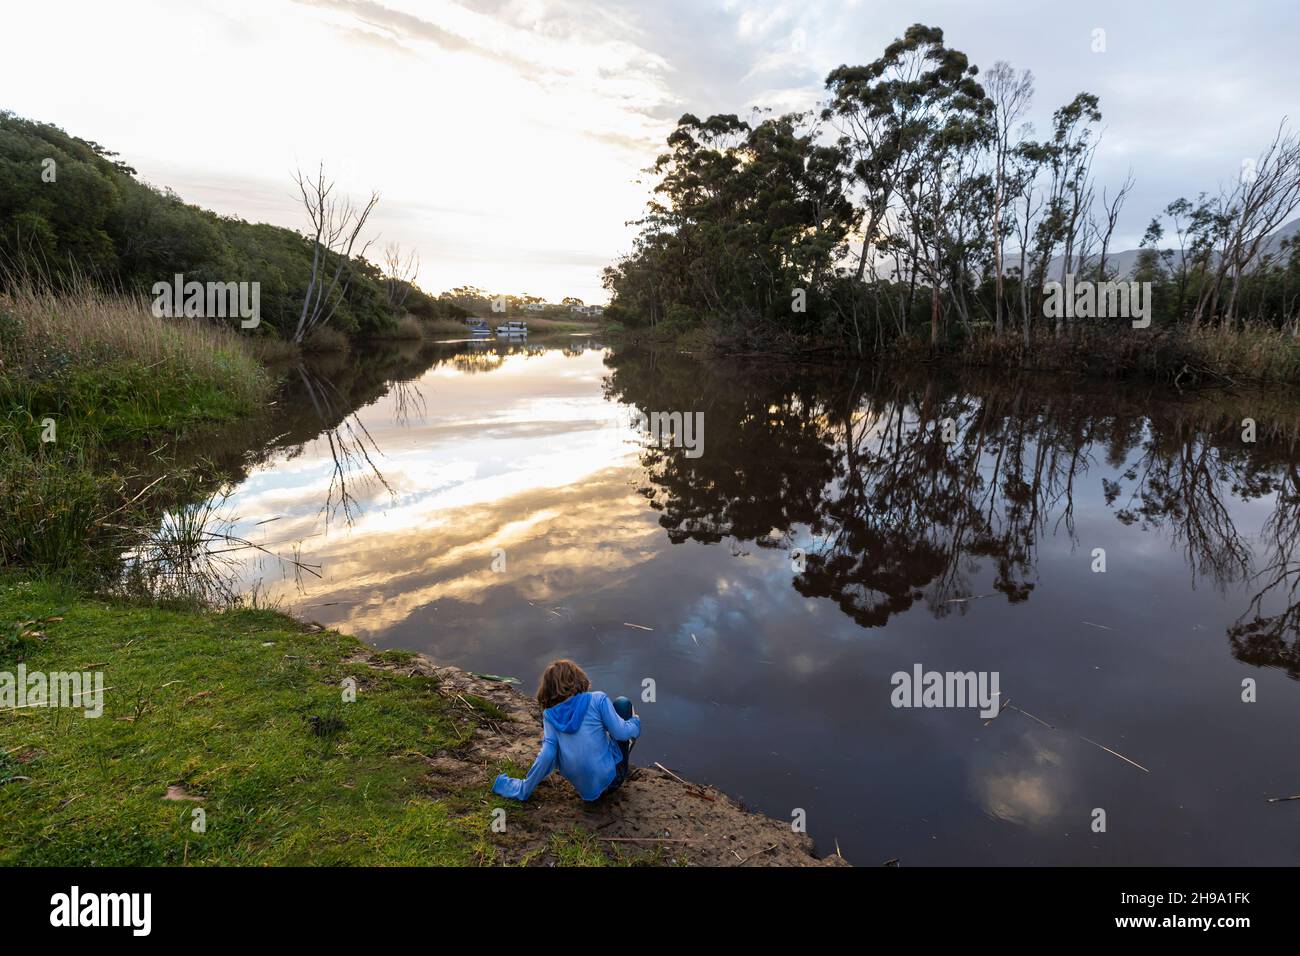 Ein kleiner Junge, der in der Dämmerung an einem Fluss steht, reflektiert den Himmel im flachen, ruhigen Wasser Stockfoto